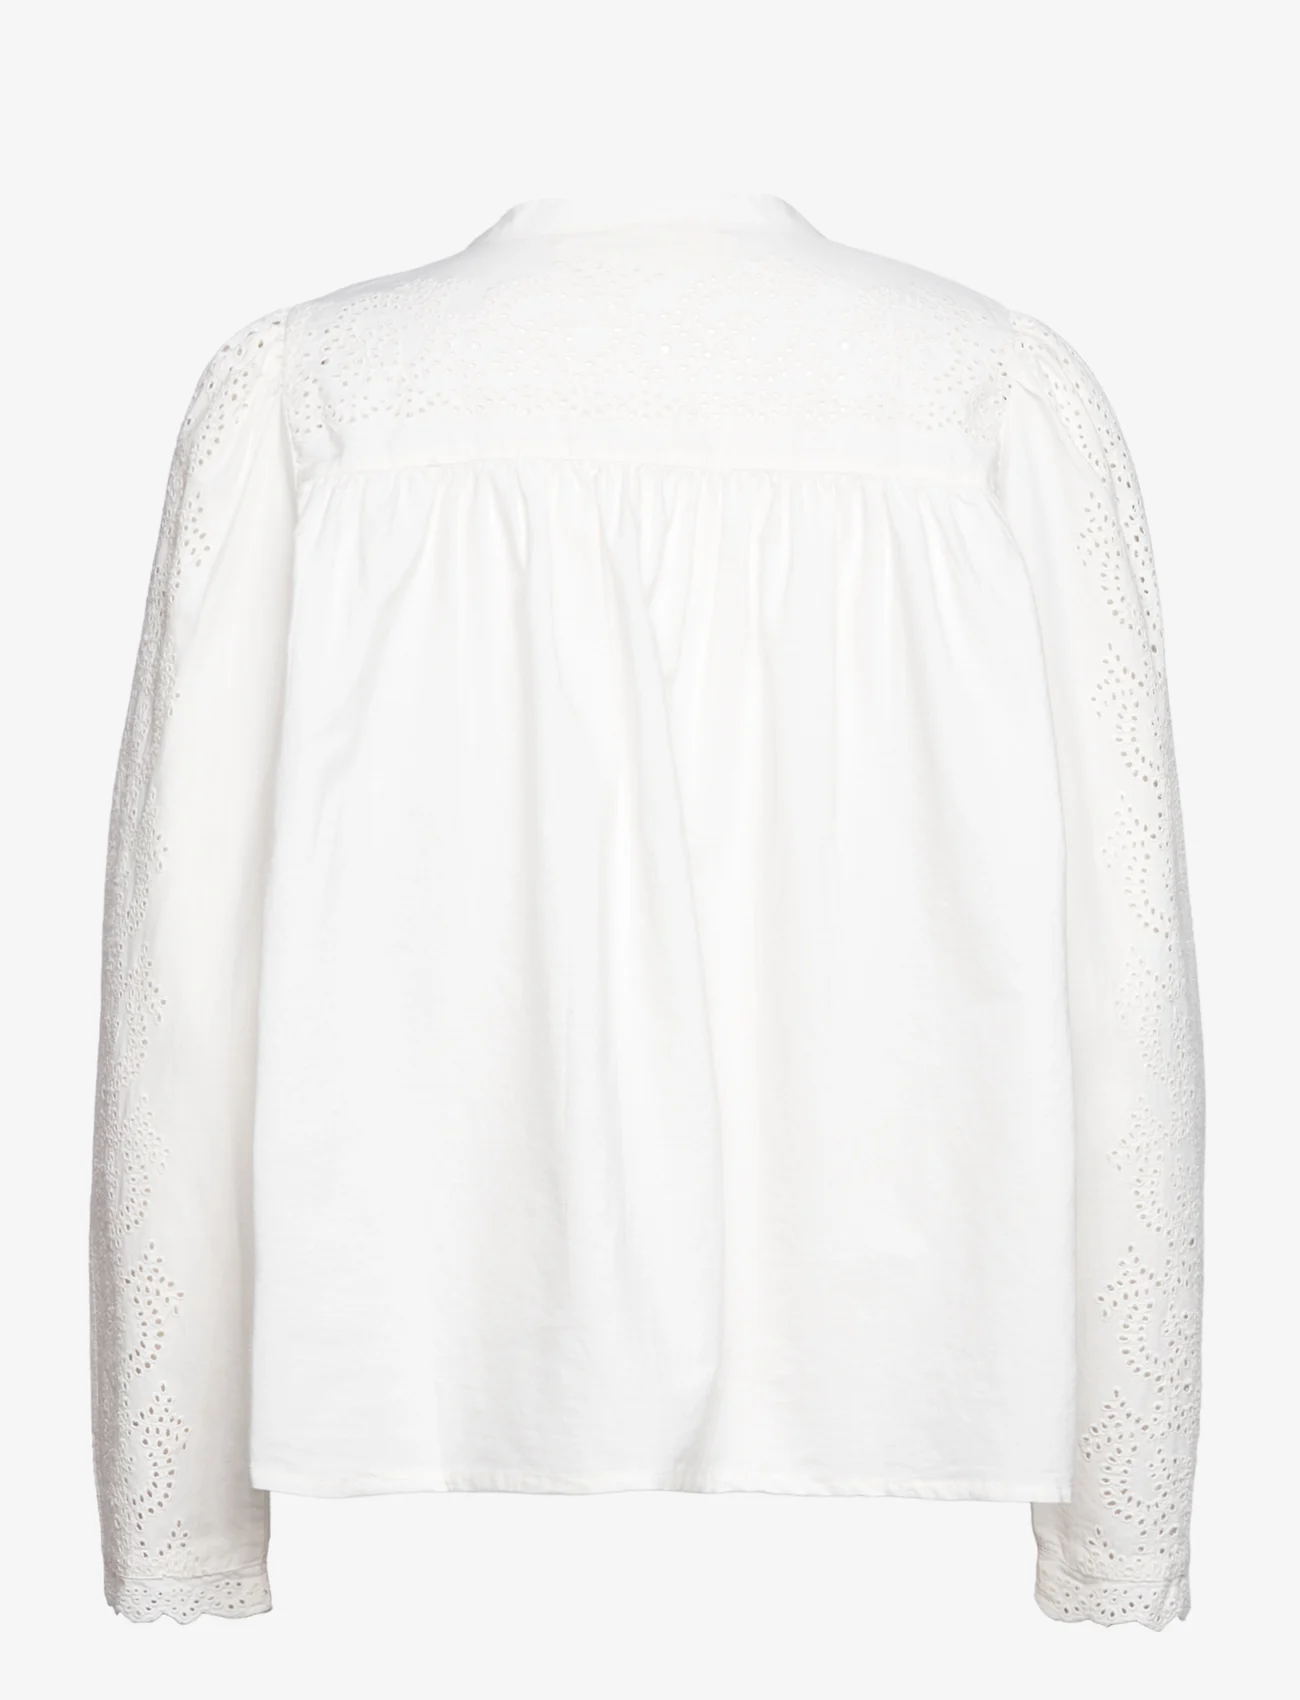 Sofie Schnoor - Shirt - overhemden met lange mouwen - off white - 1